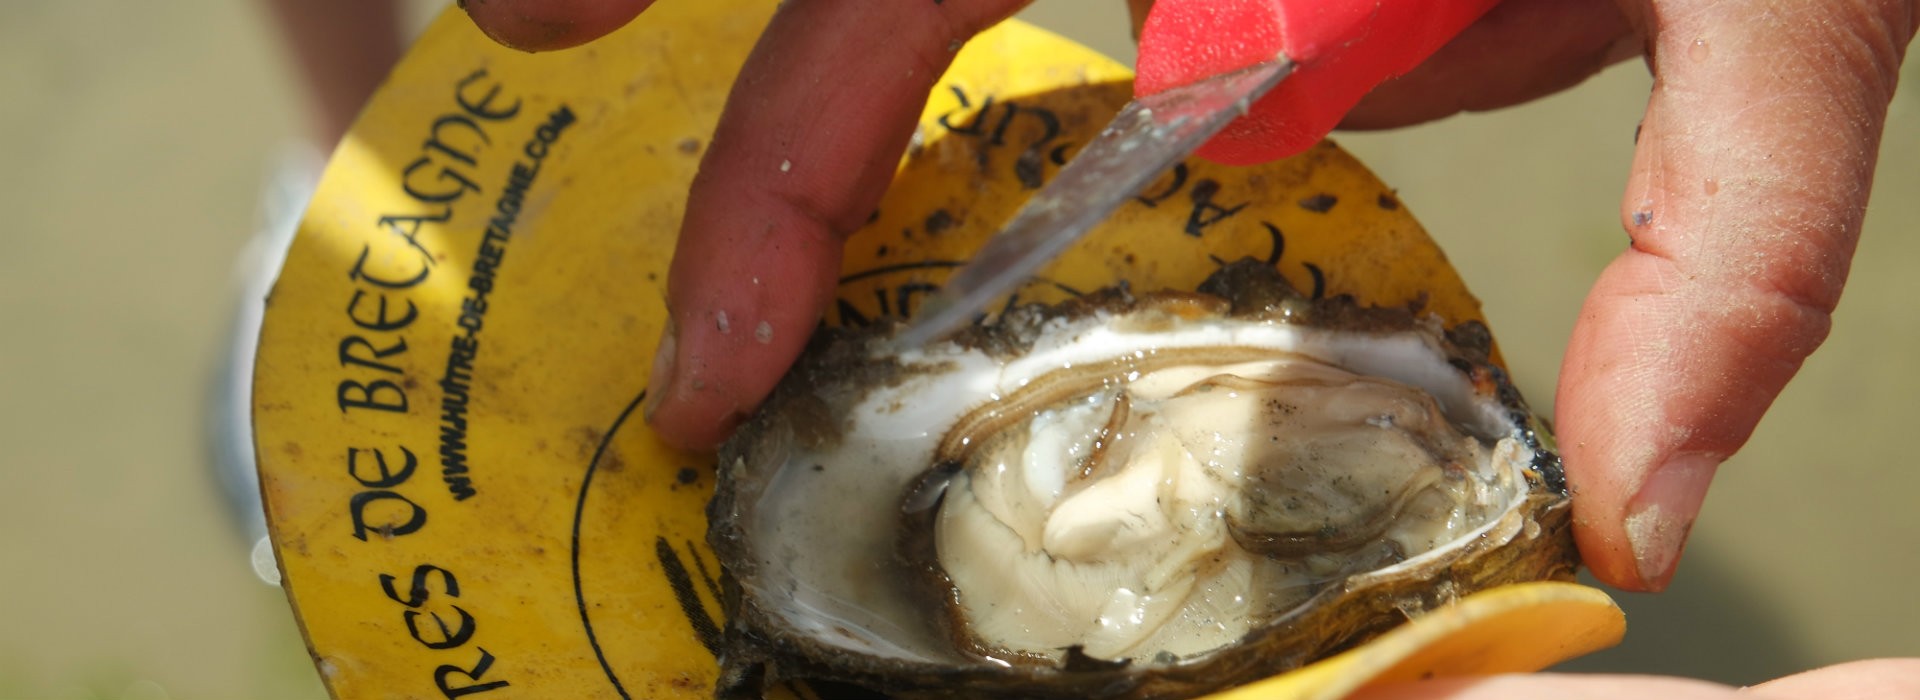 Coquillages et crustacés... en baie de Pen Bé - OTI La Baule-Presqu'île de Guérande